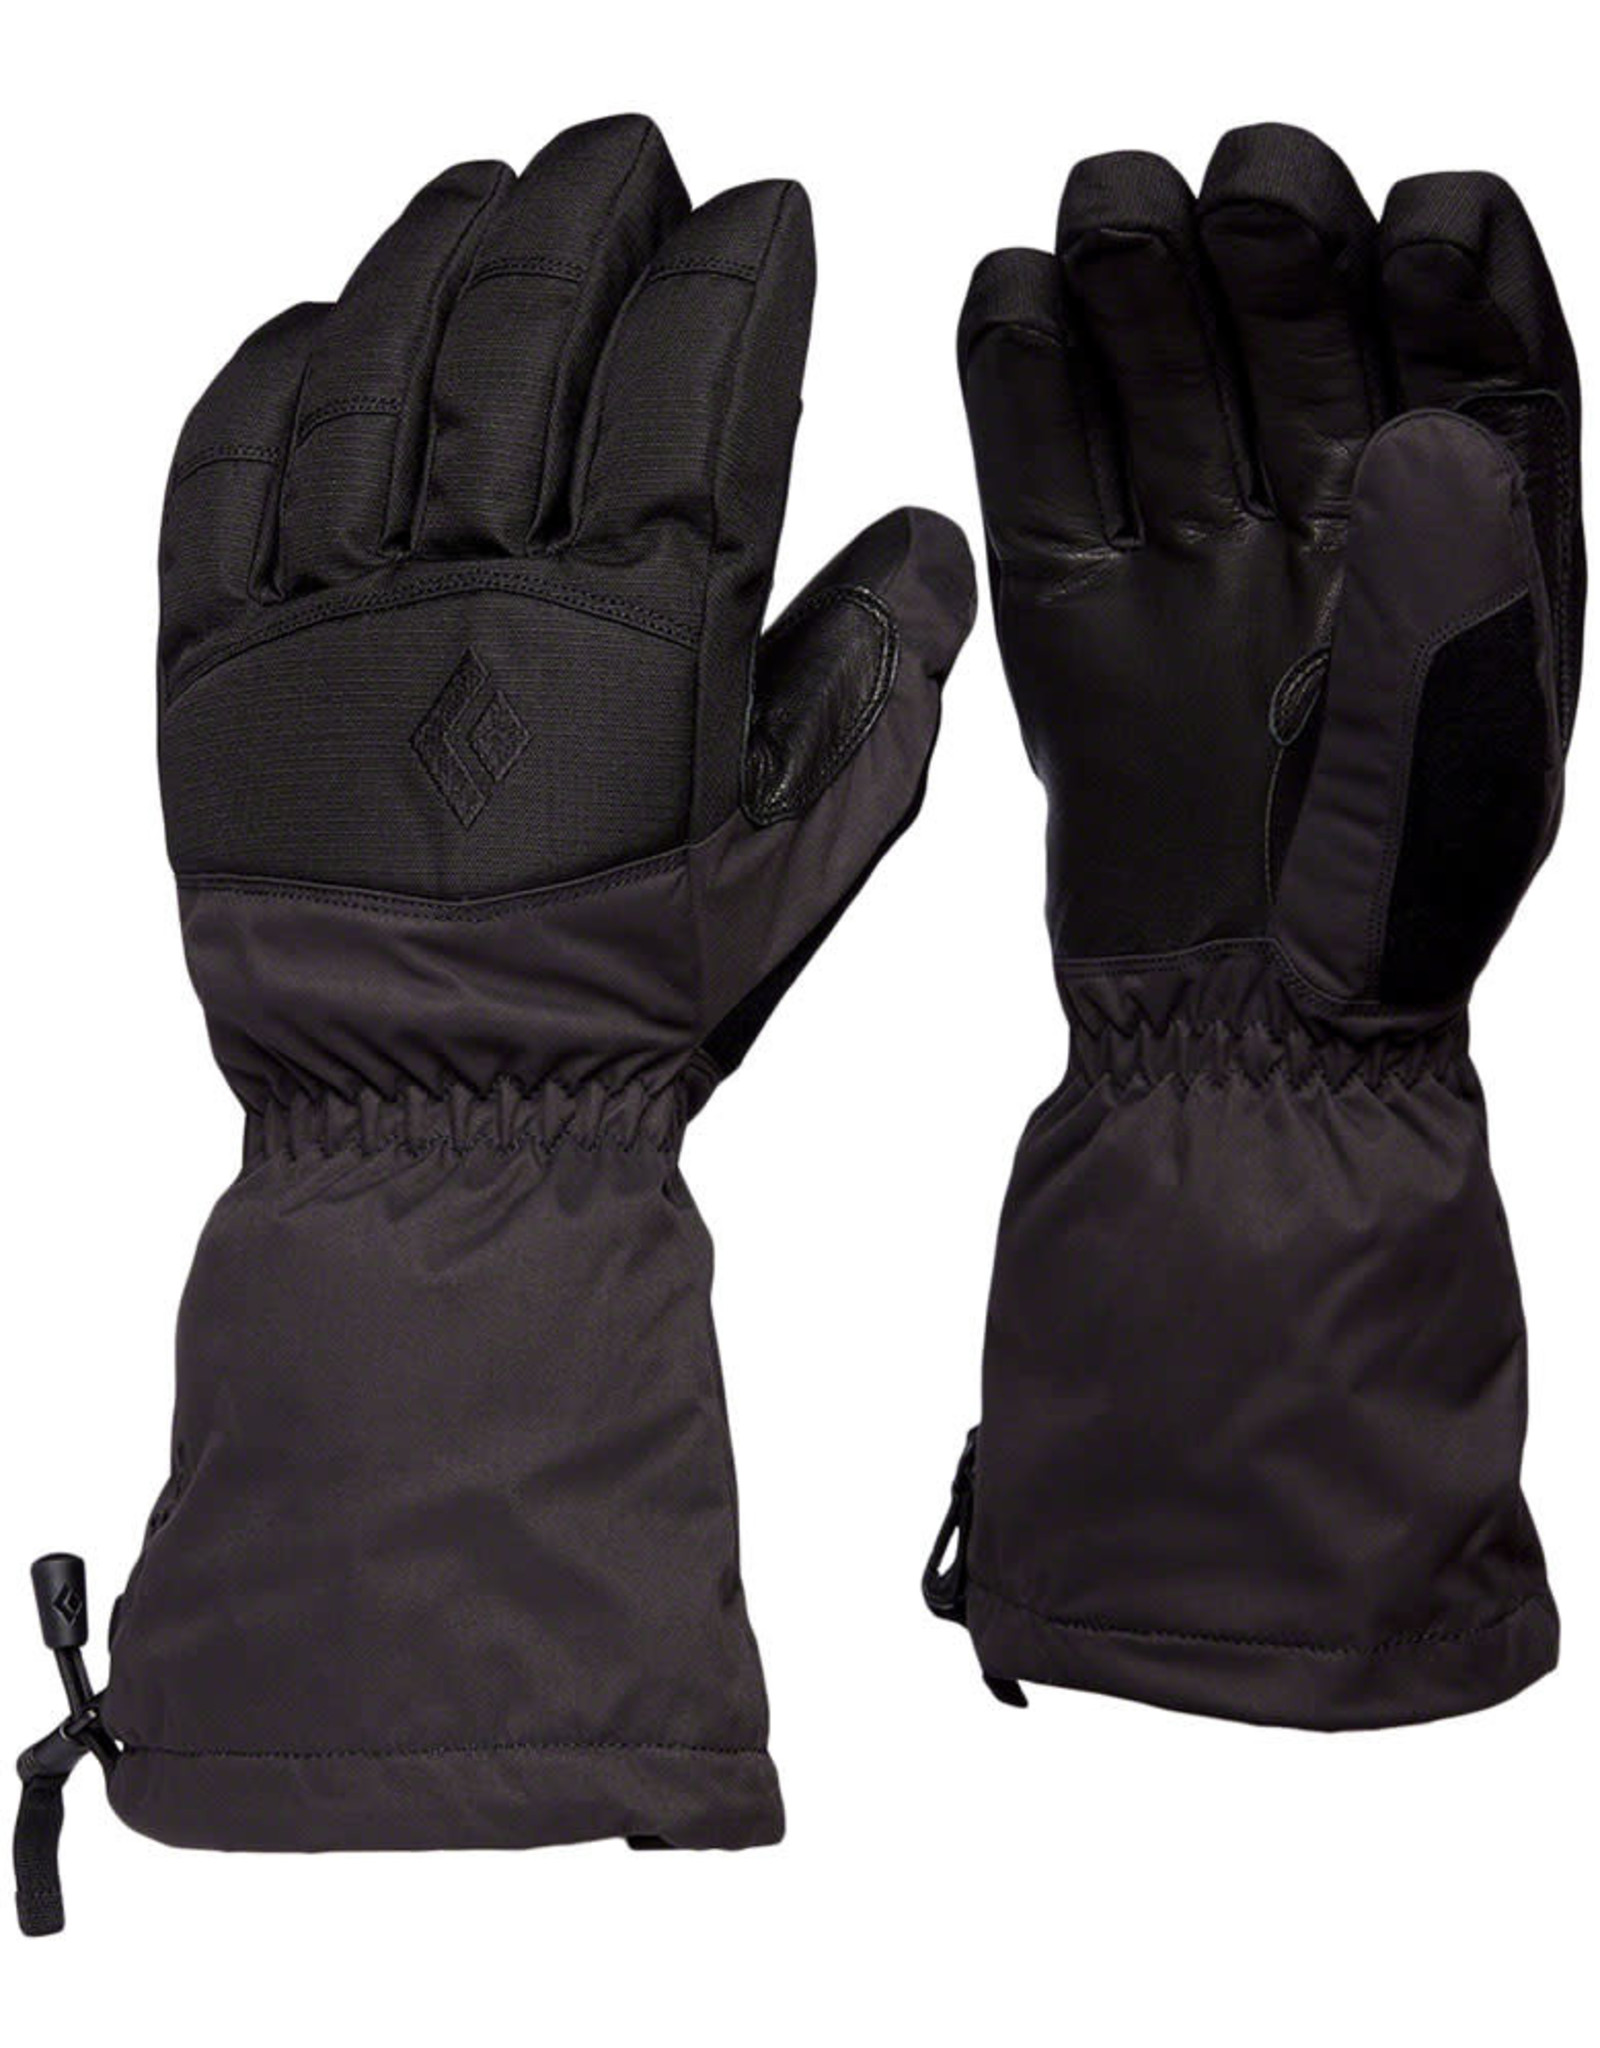 Black Diamond Black Diamond Recon Gloves Full Finger Black